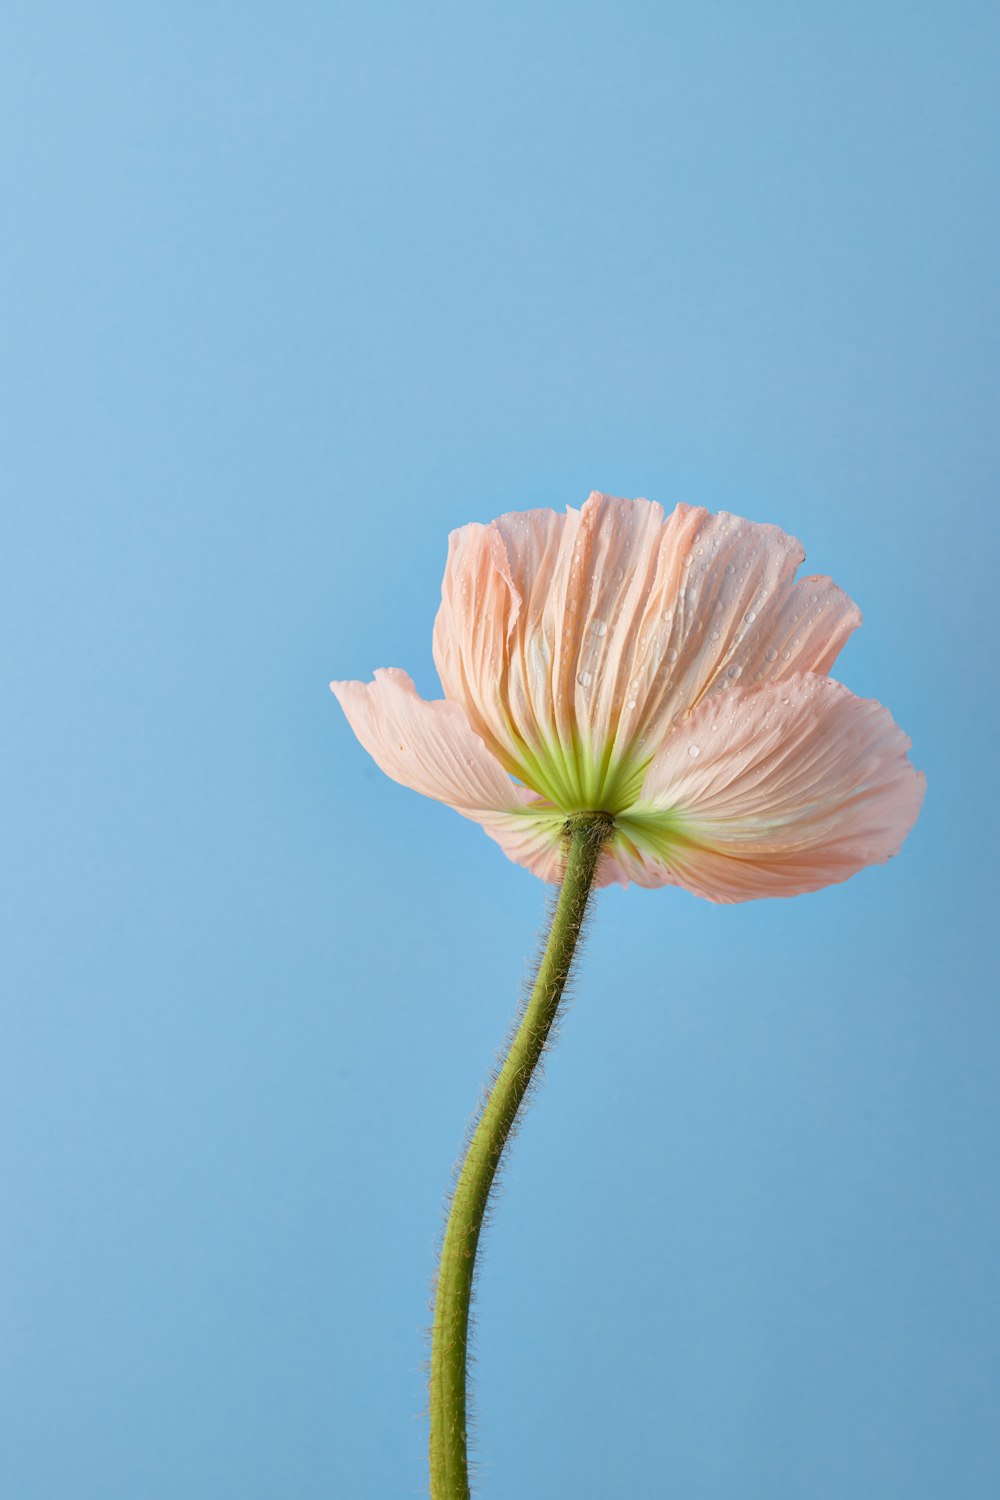 eine einzelne rosa Blume mit blauem Himmel im Hintergrund